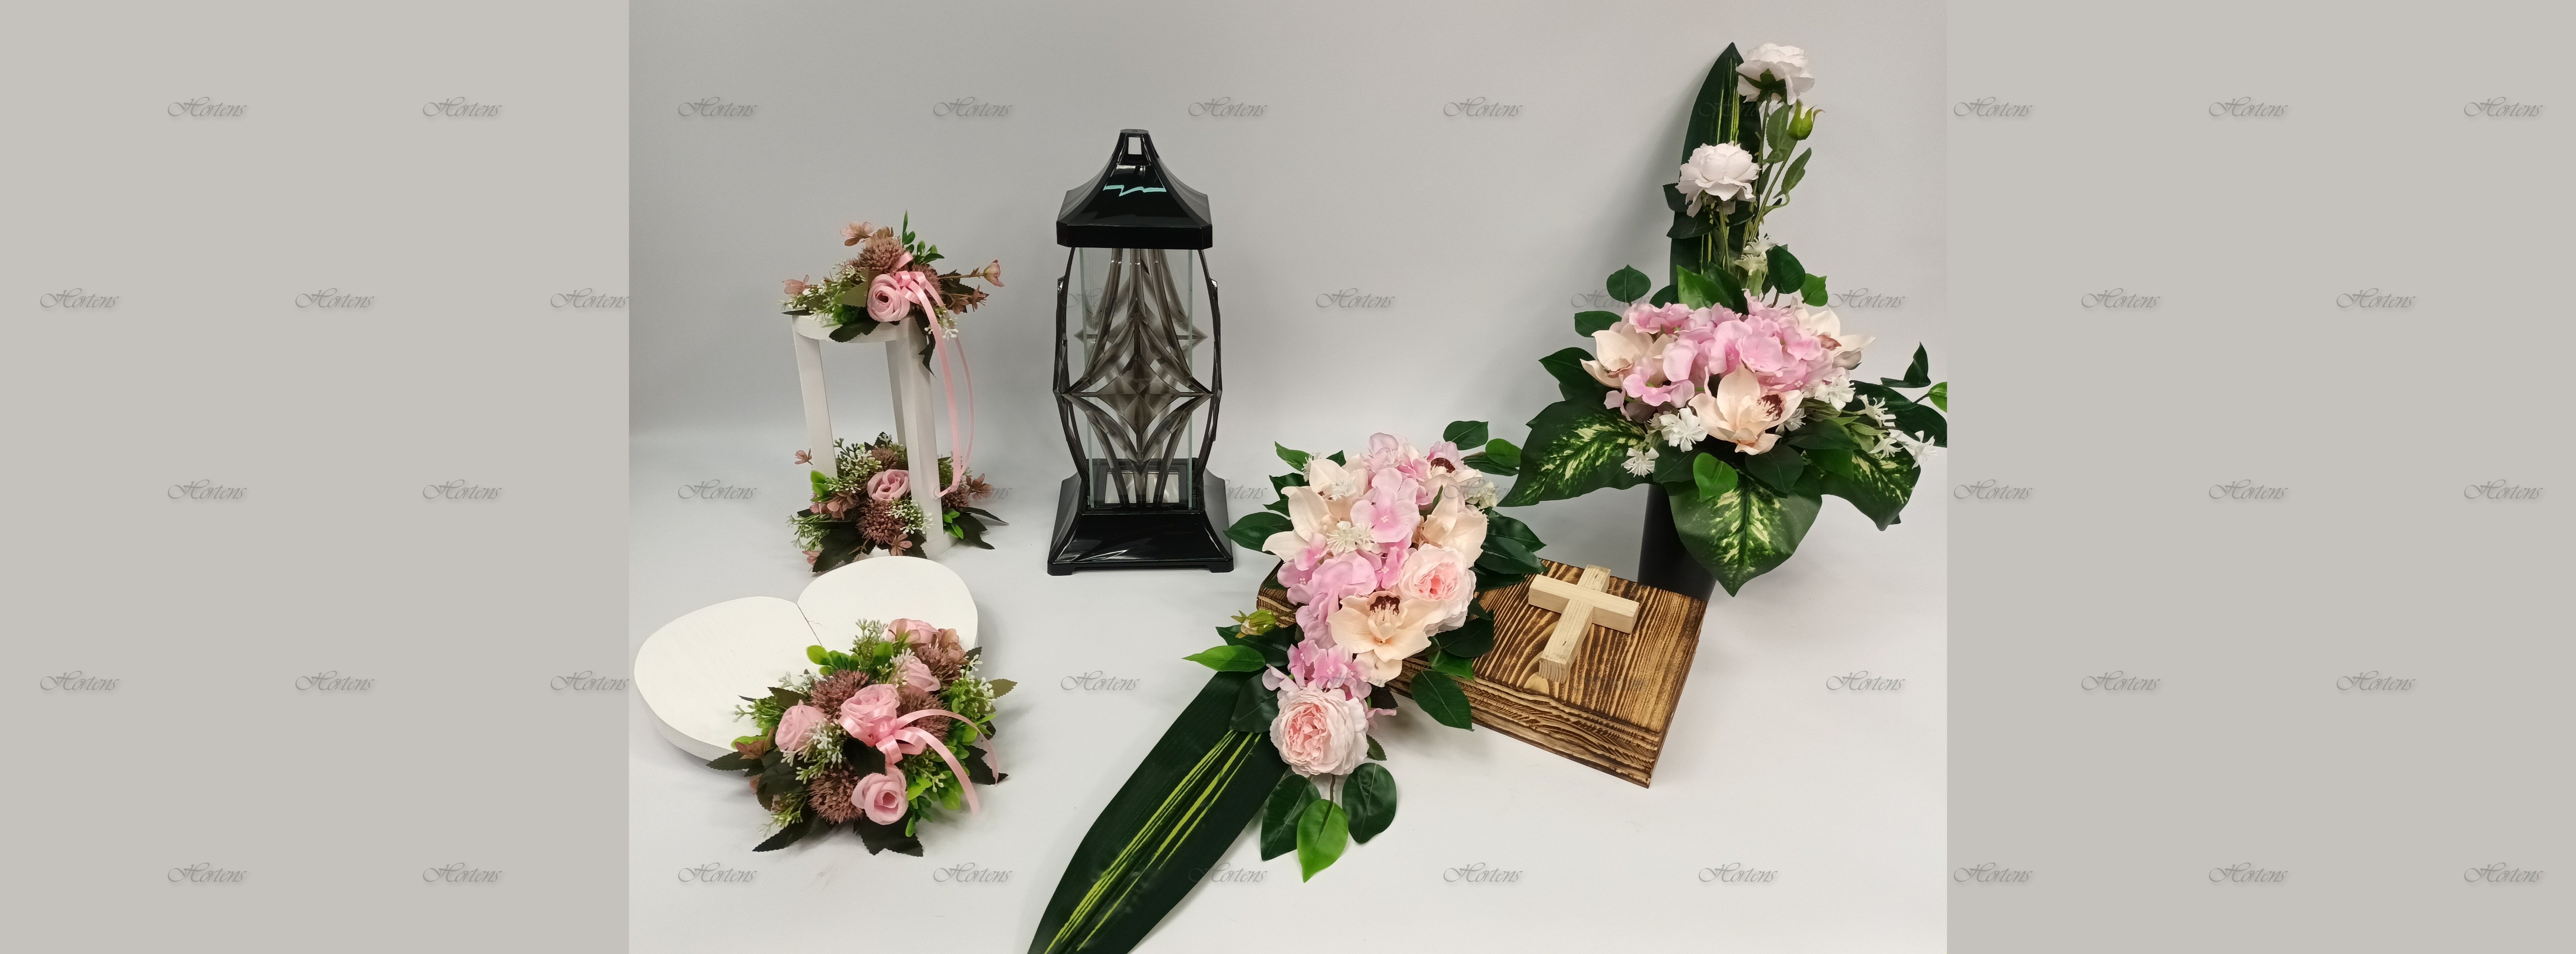 виробник свічок оптові продавці штучних квітів гіпсові фігури Польща